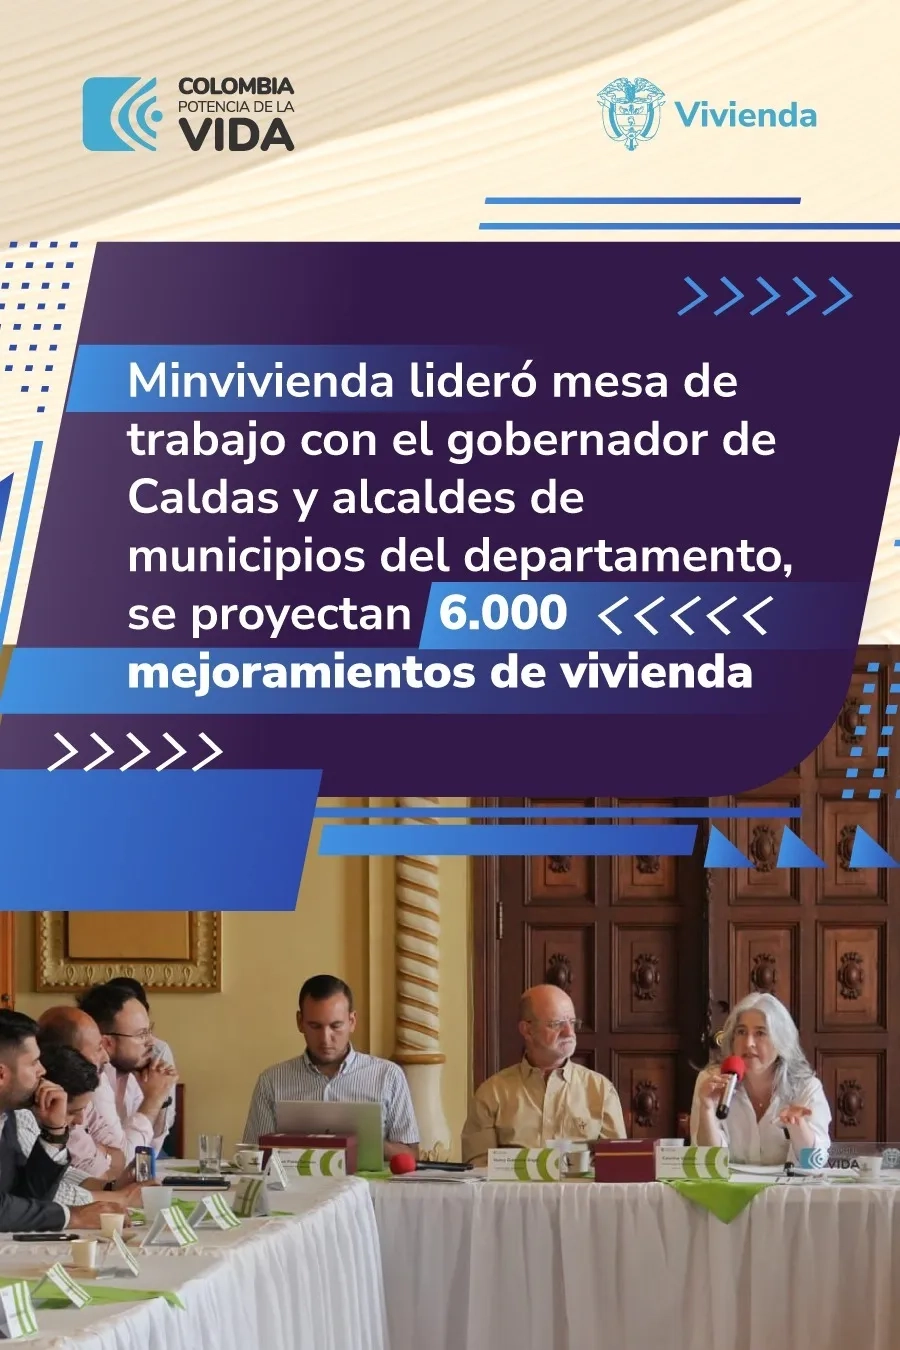 Minvivienda lideró mesa de trabajo con el gobernador de Caldas y alcaldes de municipios del departamento, se proyectan 6.000 mejoramientos de vivienda